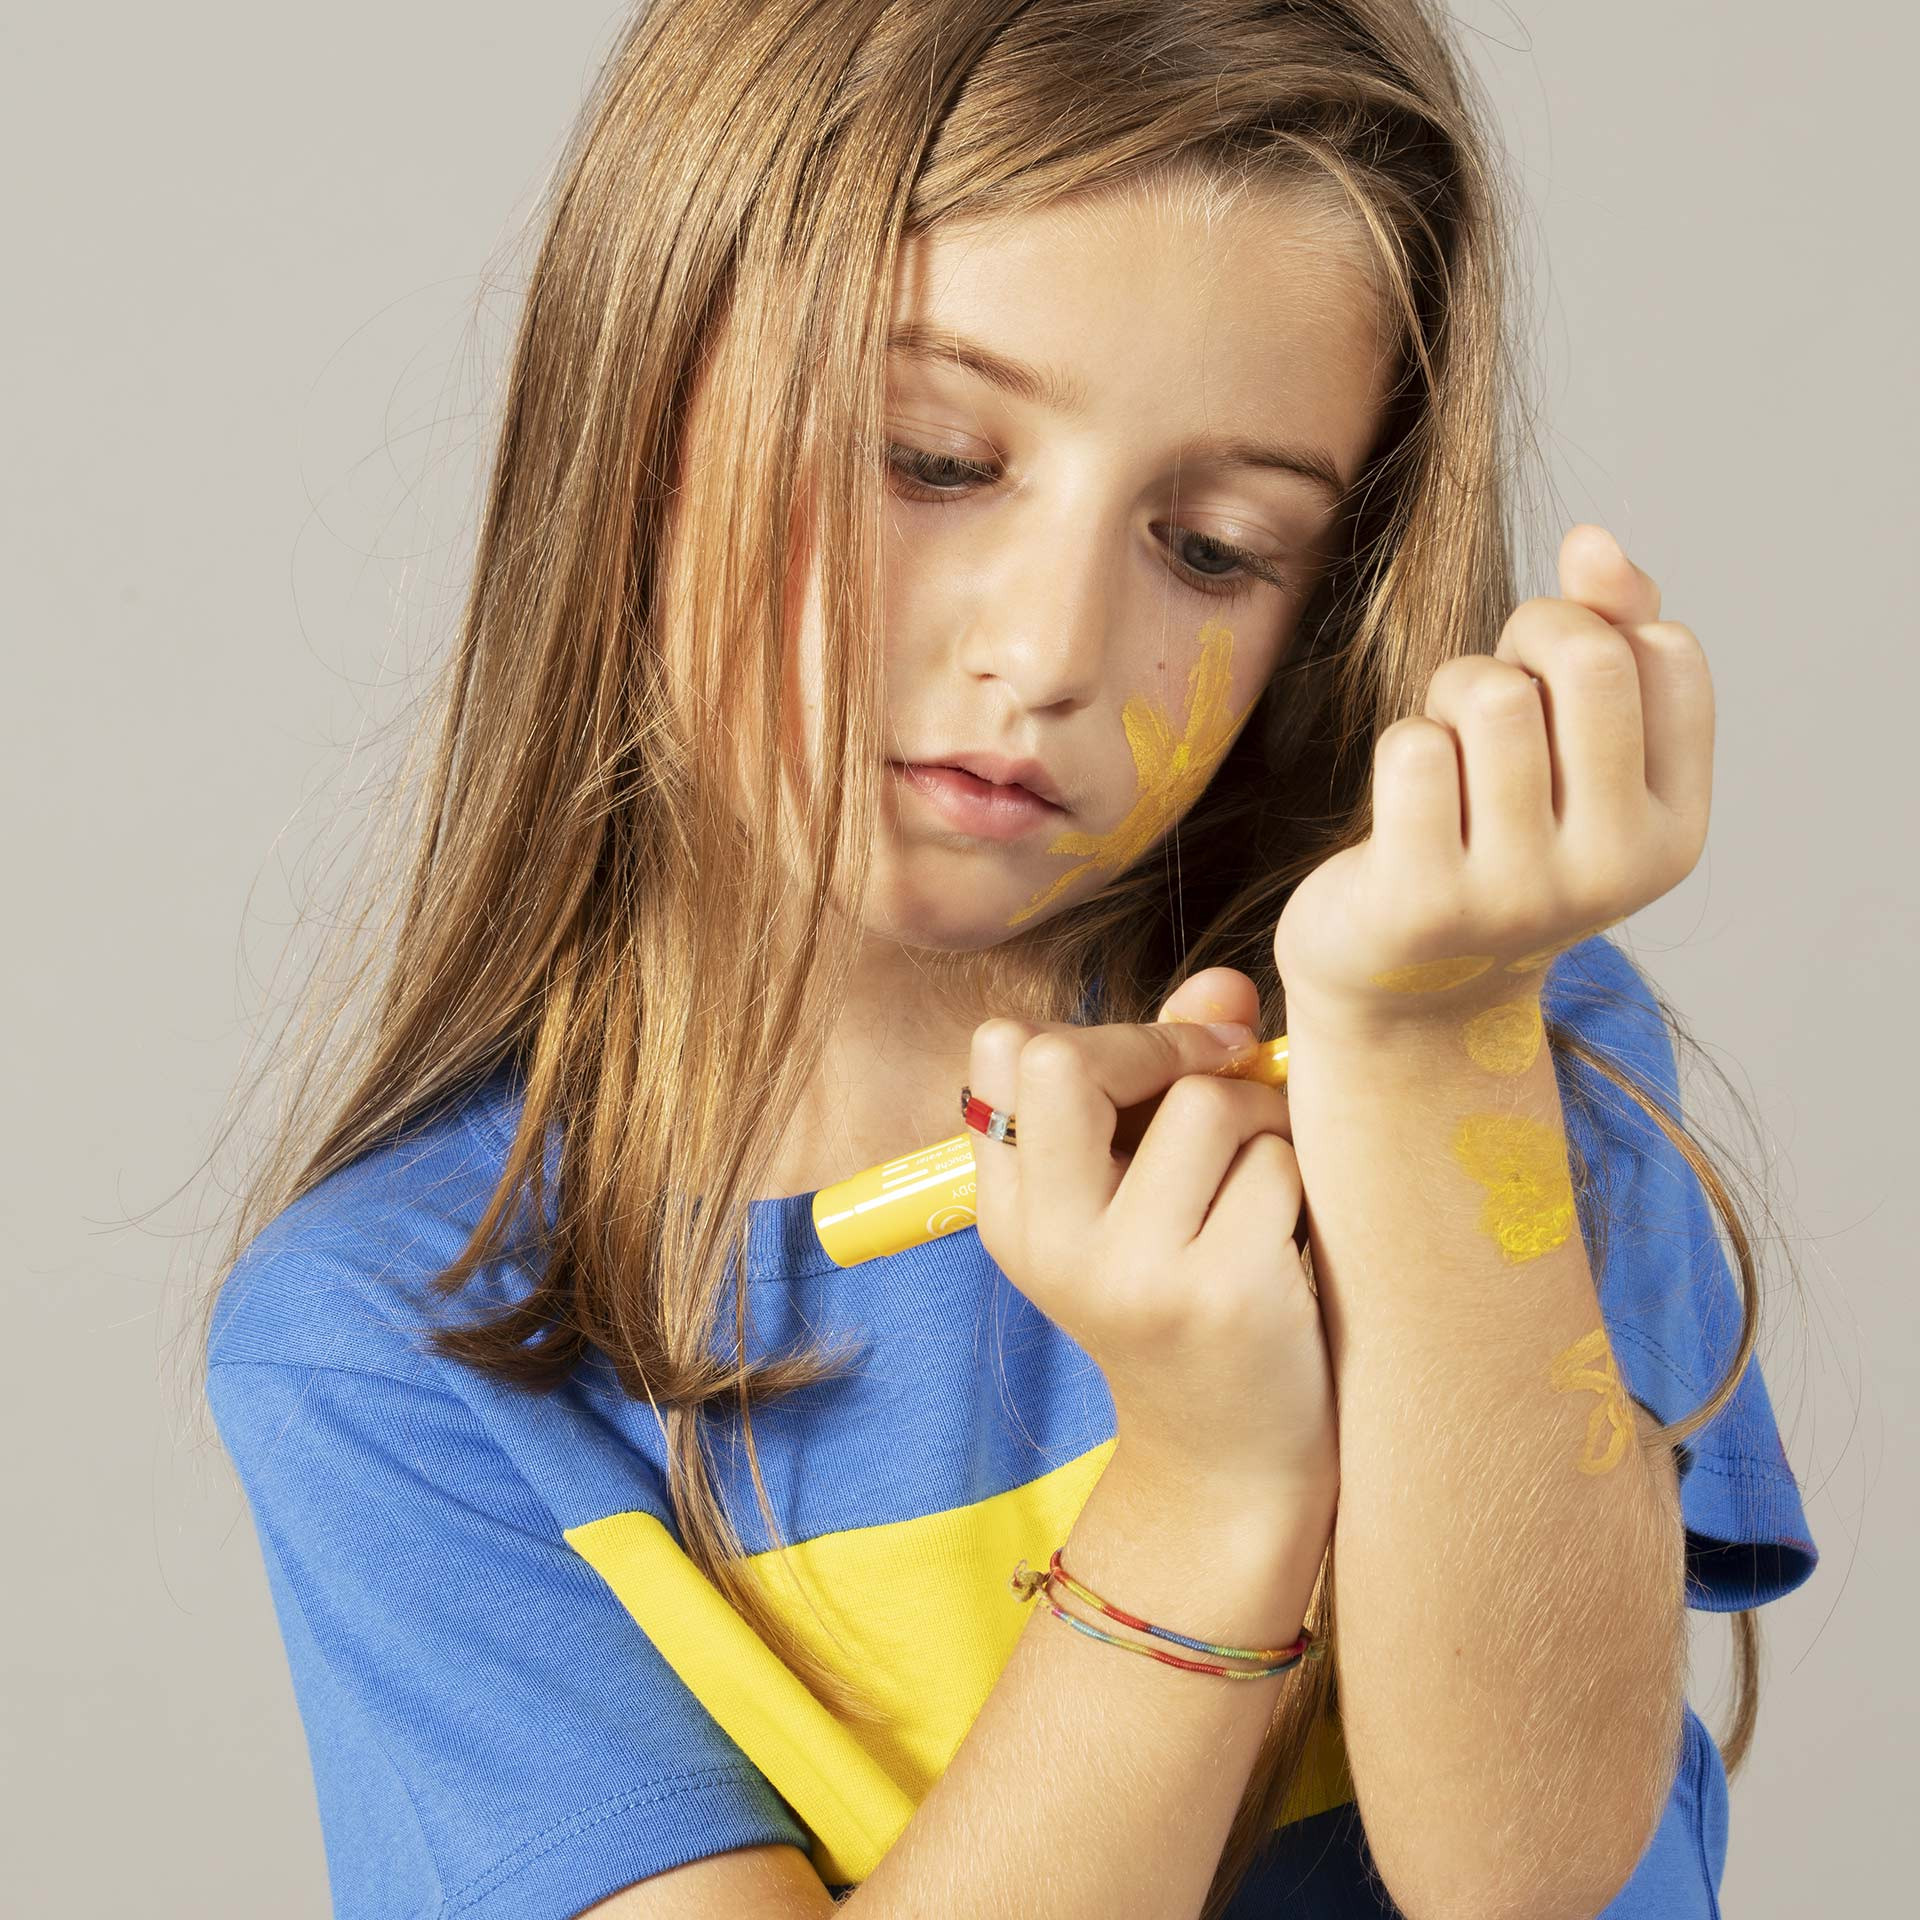 maquillage enfant petite fille dessin sur peau jaune nailmatic kids